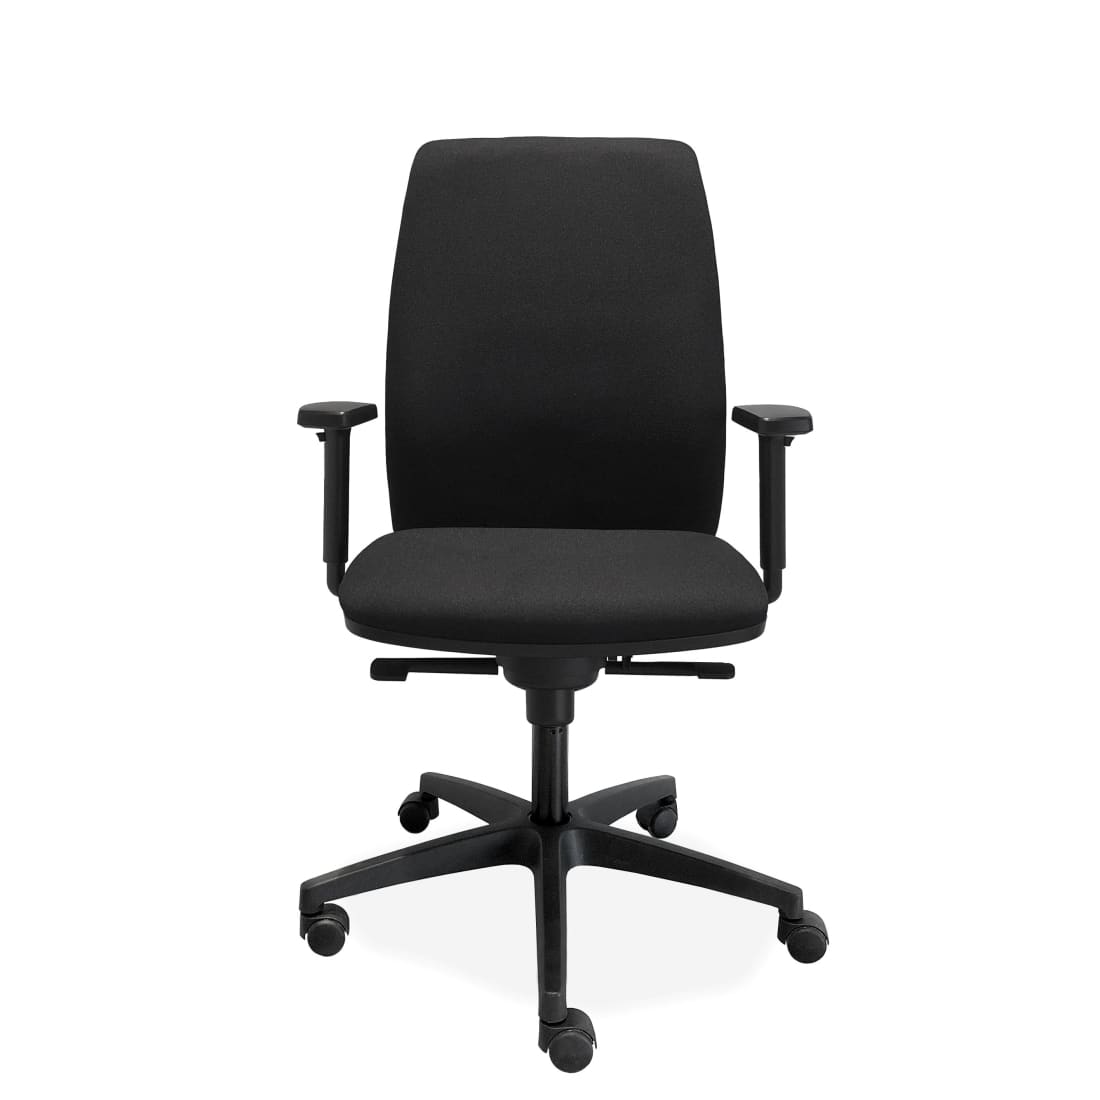 ergonomische-bureaustoel-comfort-de-singel-nen-1335-bureaustoelen-meubels-stoel-office-717_1057eaee-2b33-4825-a15b-ee3261140b5c.jpg